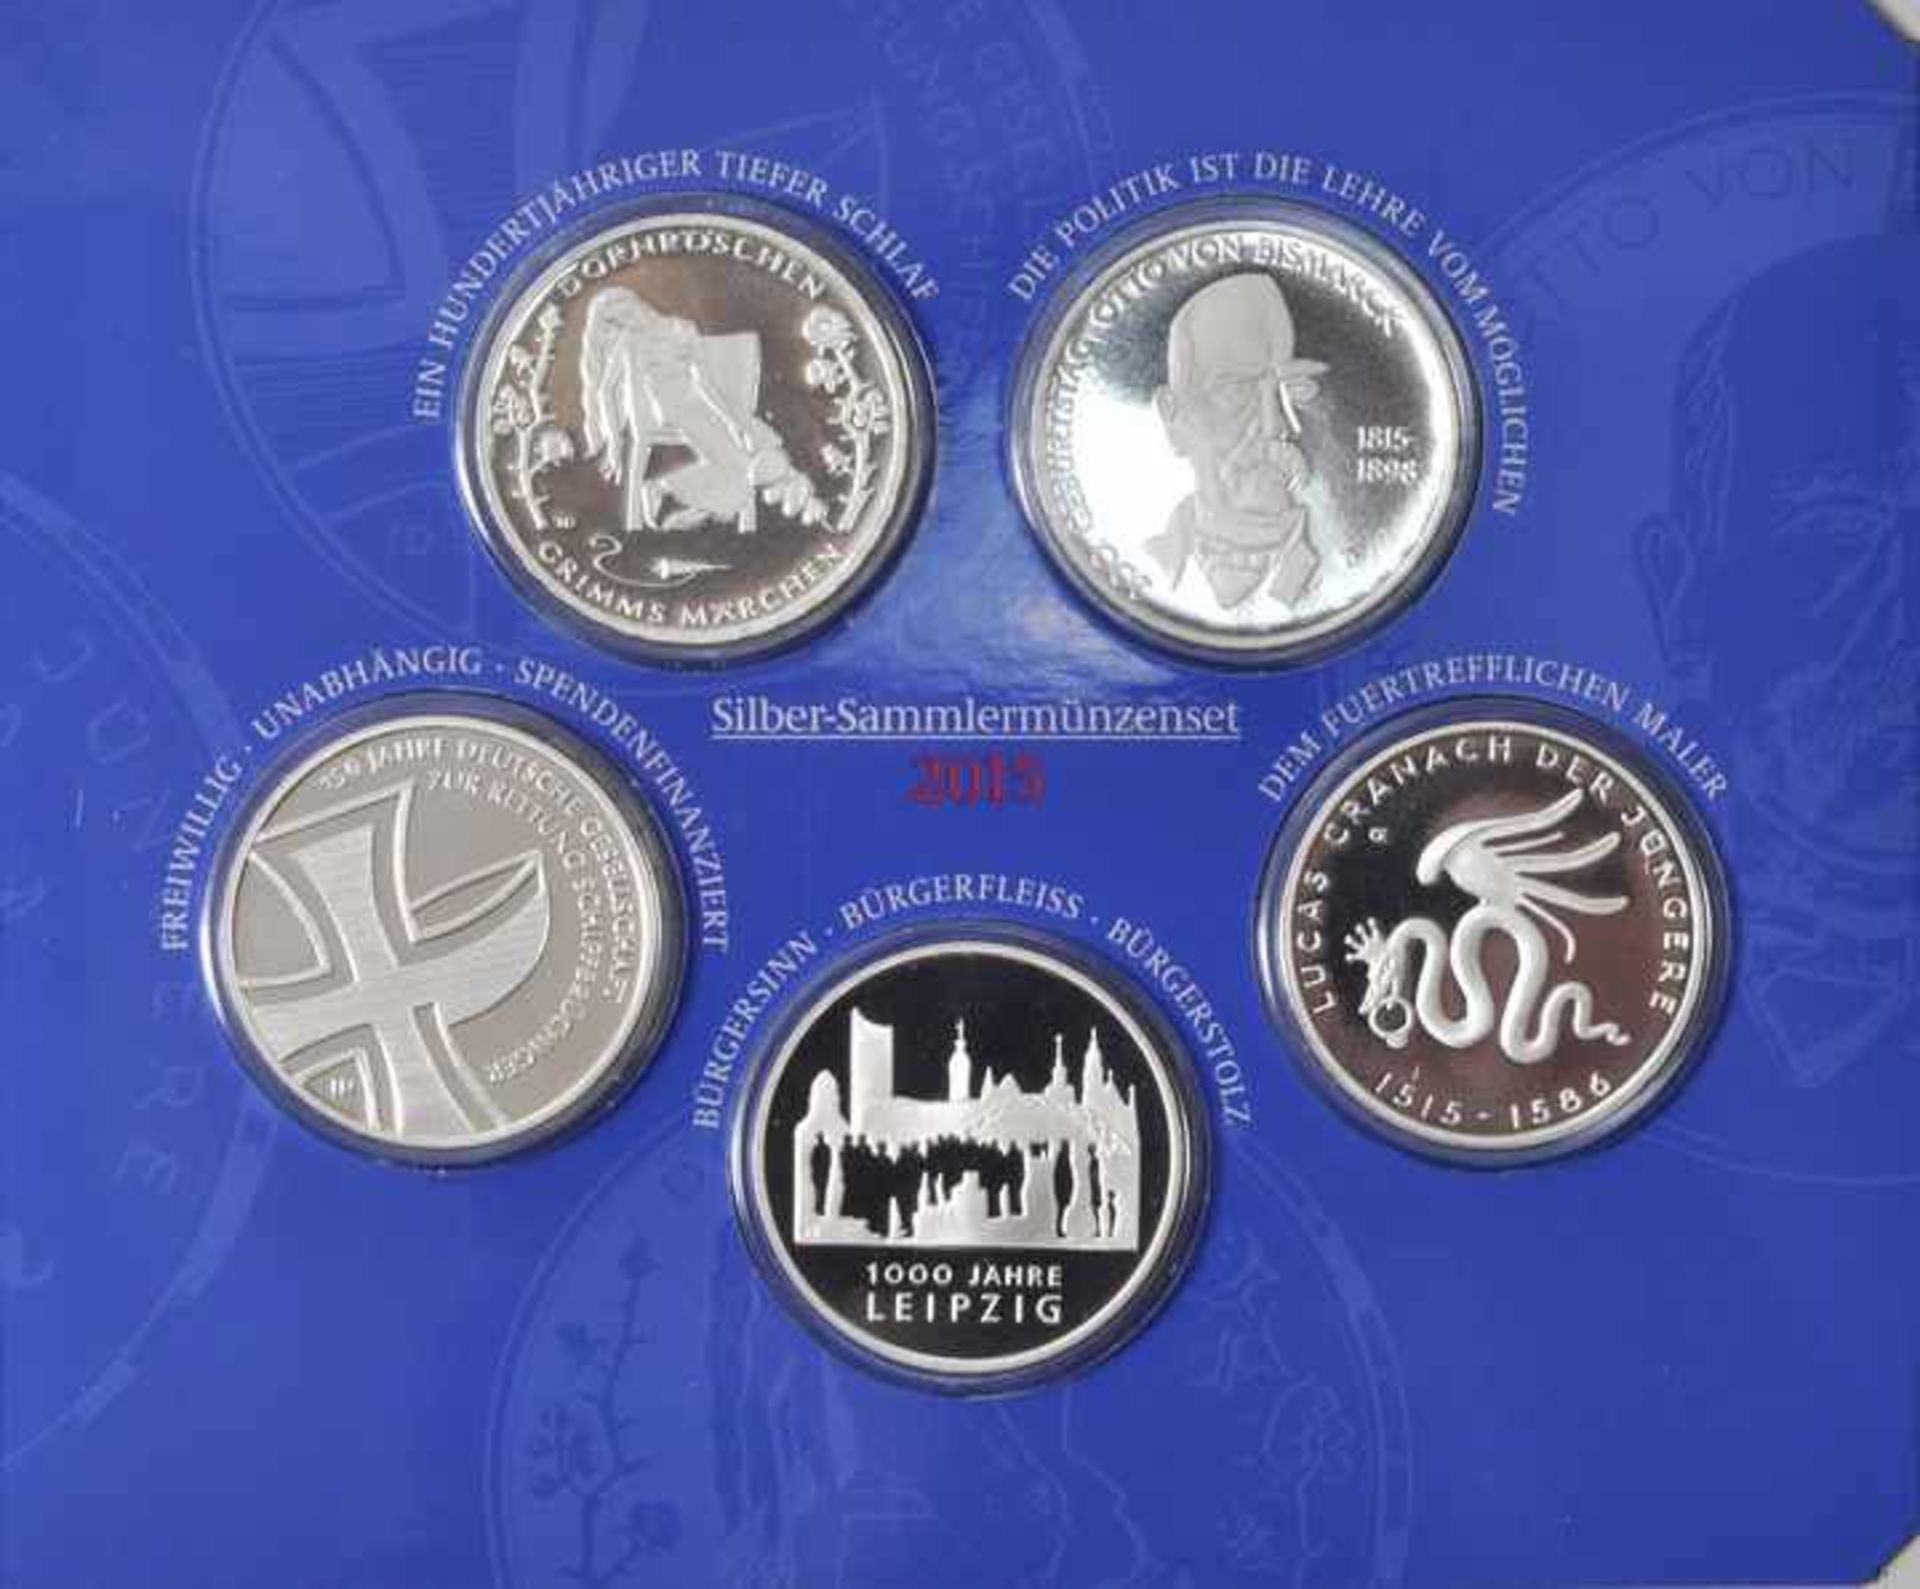 Sammlermünzenset, 5 x 10 Euro, BRD, 2015Jg. 2015, Silber 625, Spiegelglanz, A, D, G, F, J. Orig.